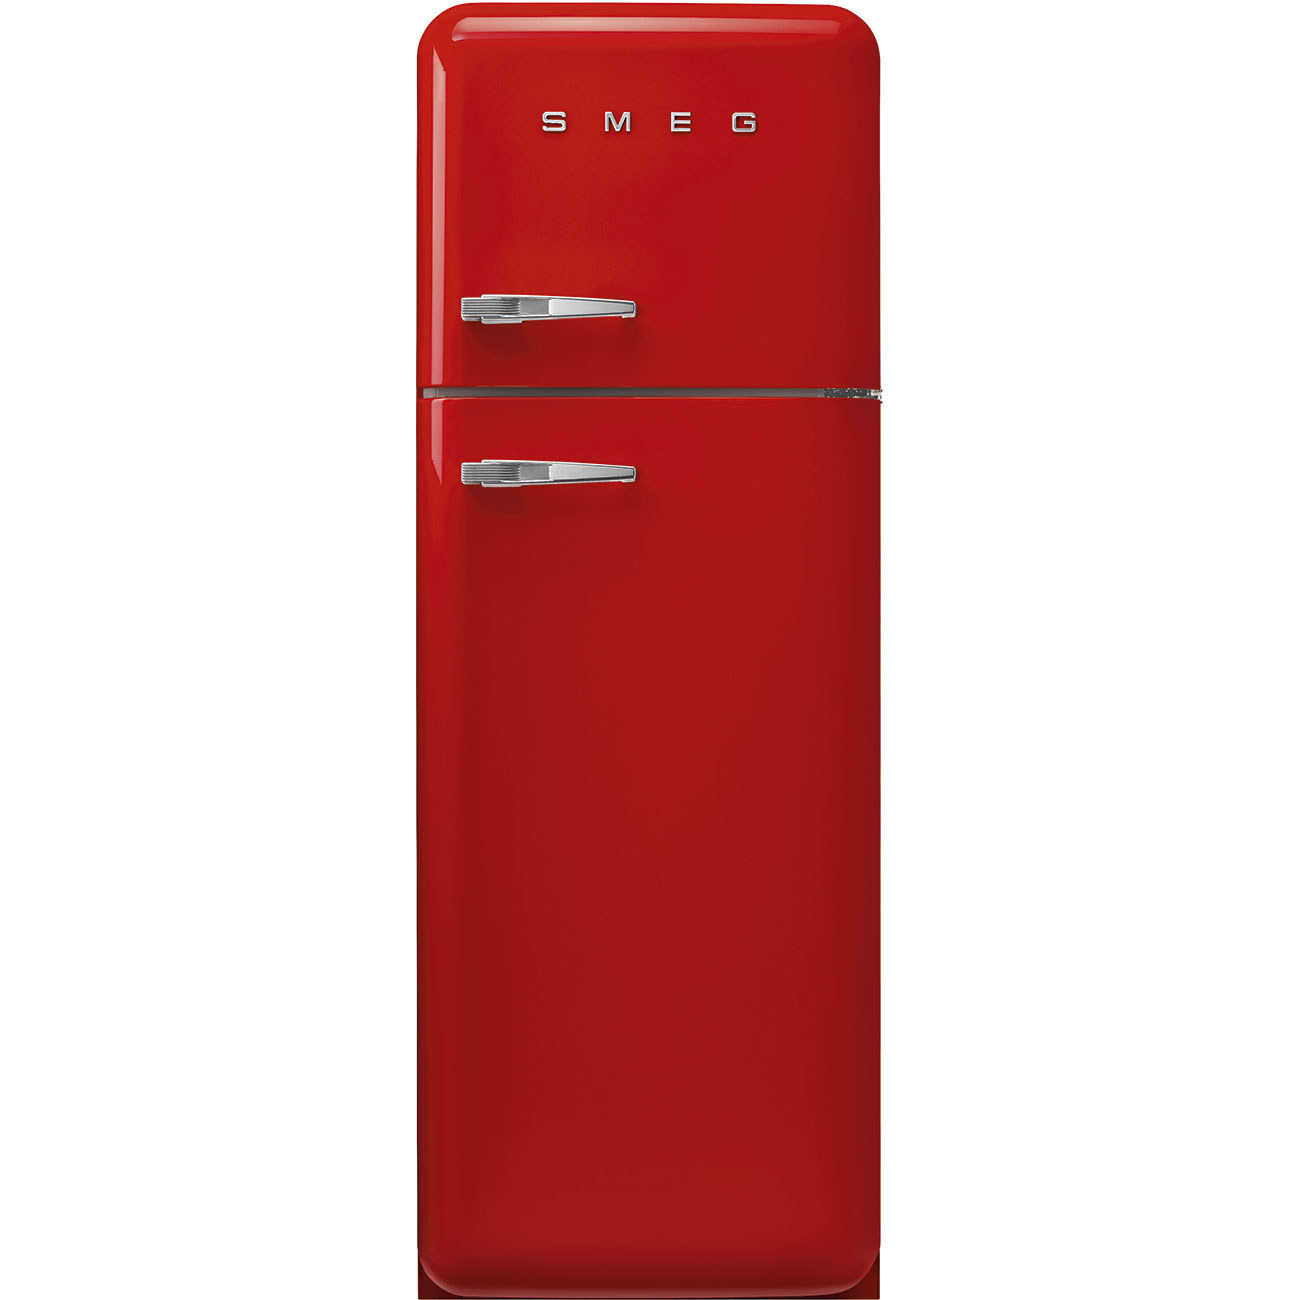 Red refrigerator - Smeg_1